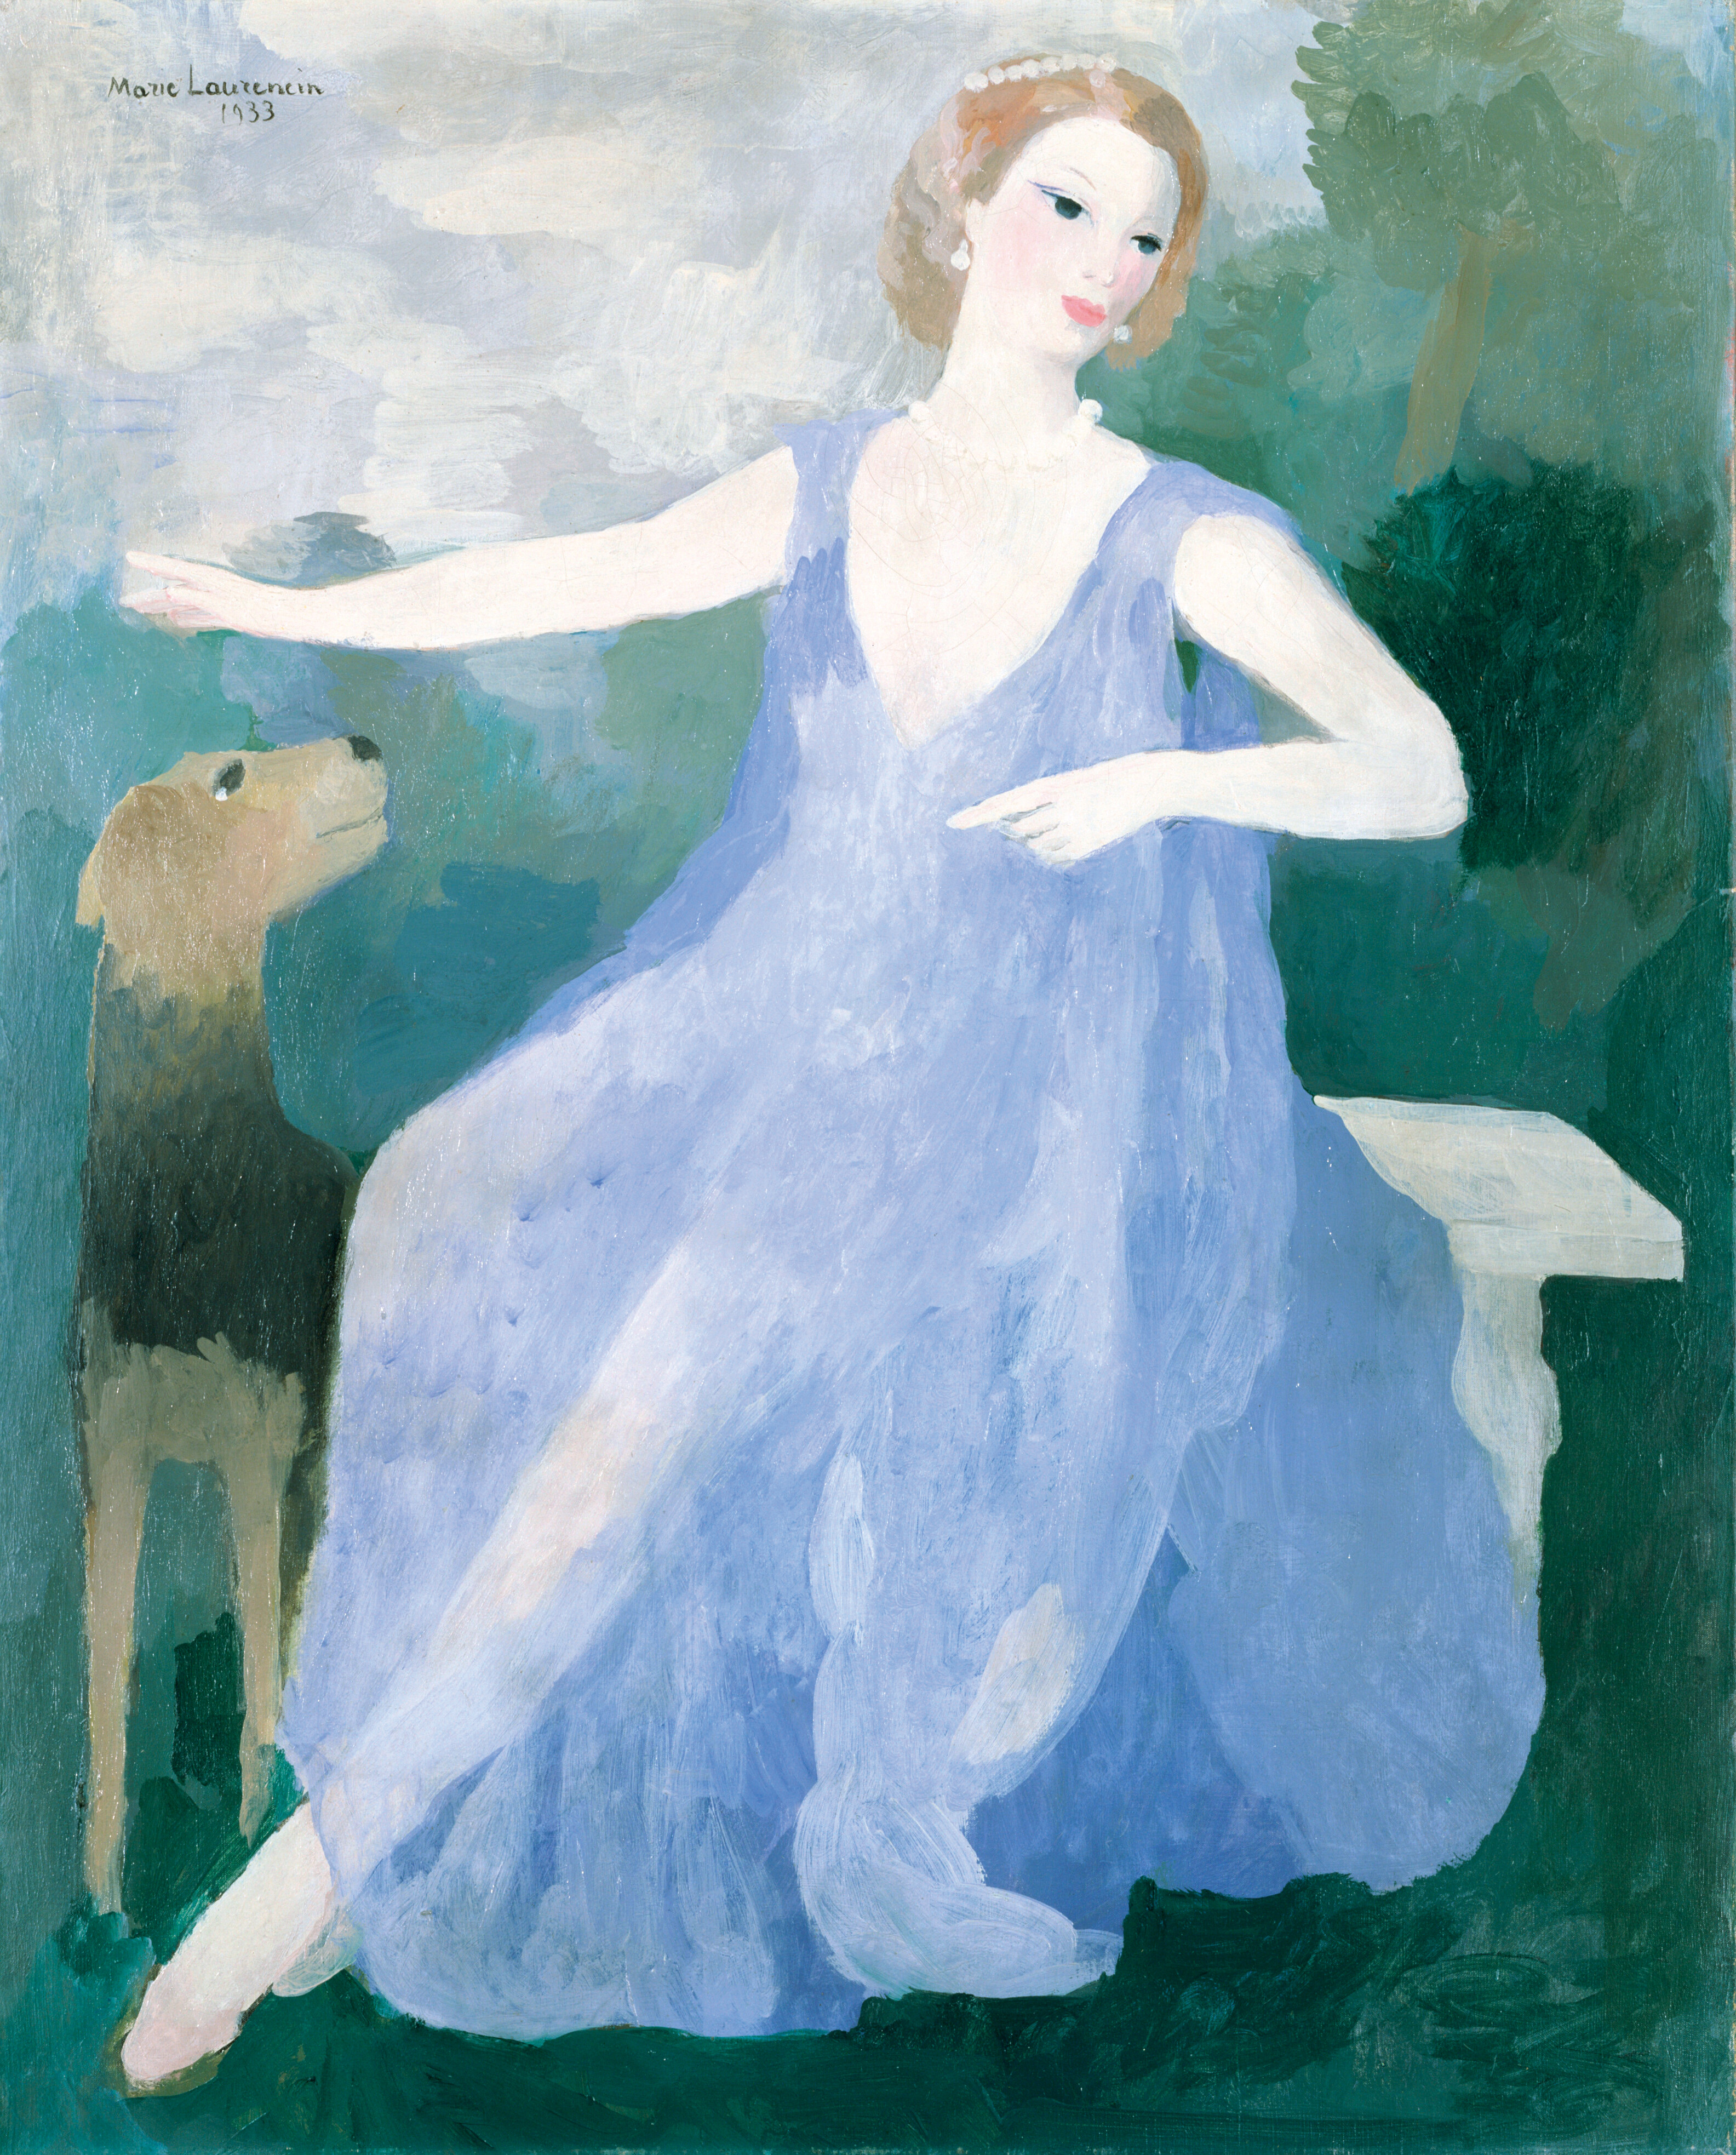 マリー・ローランサン 《ヴァランティーヌ・テシエの肖像》 1933年 油彩・キャンヴァス ポーラ美術館